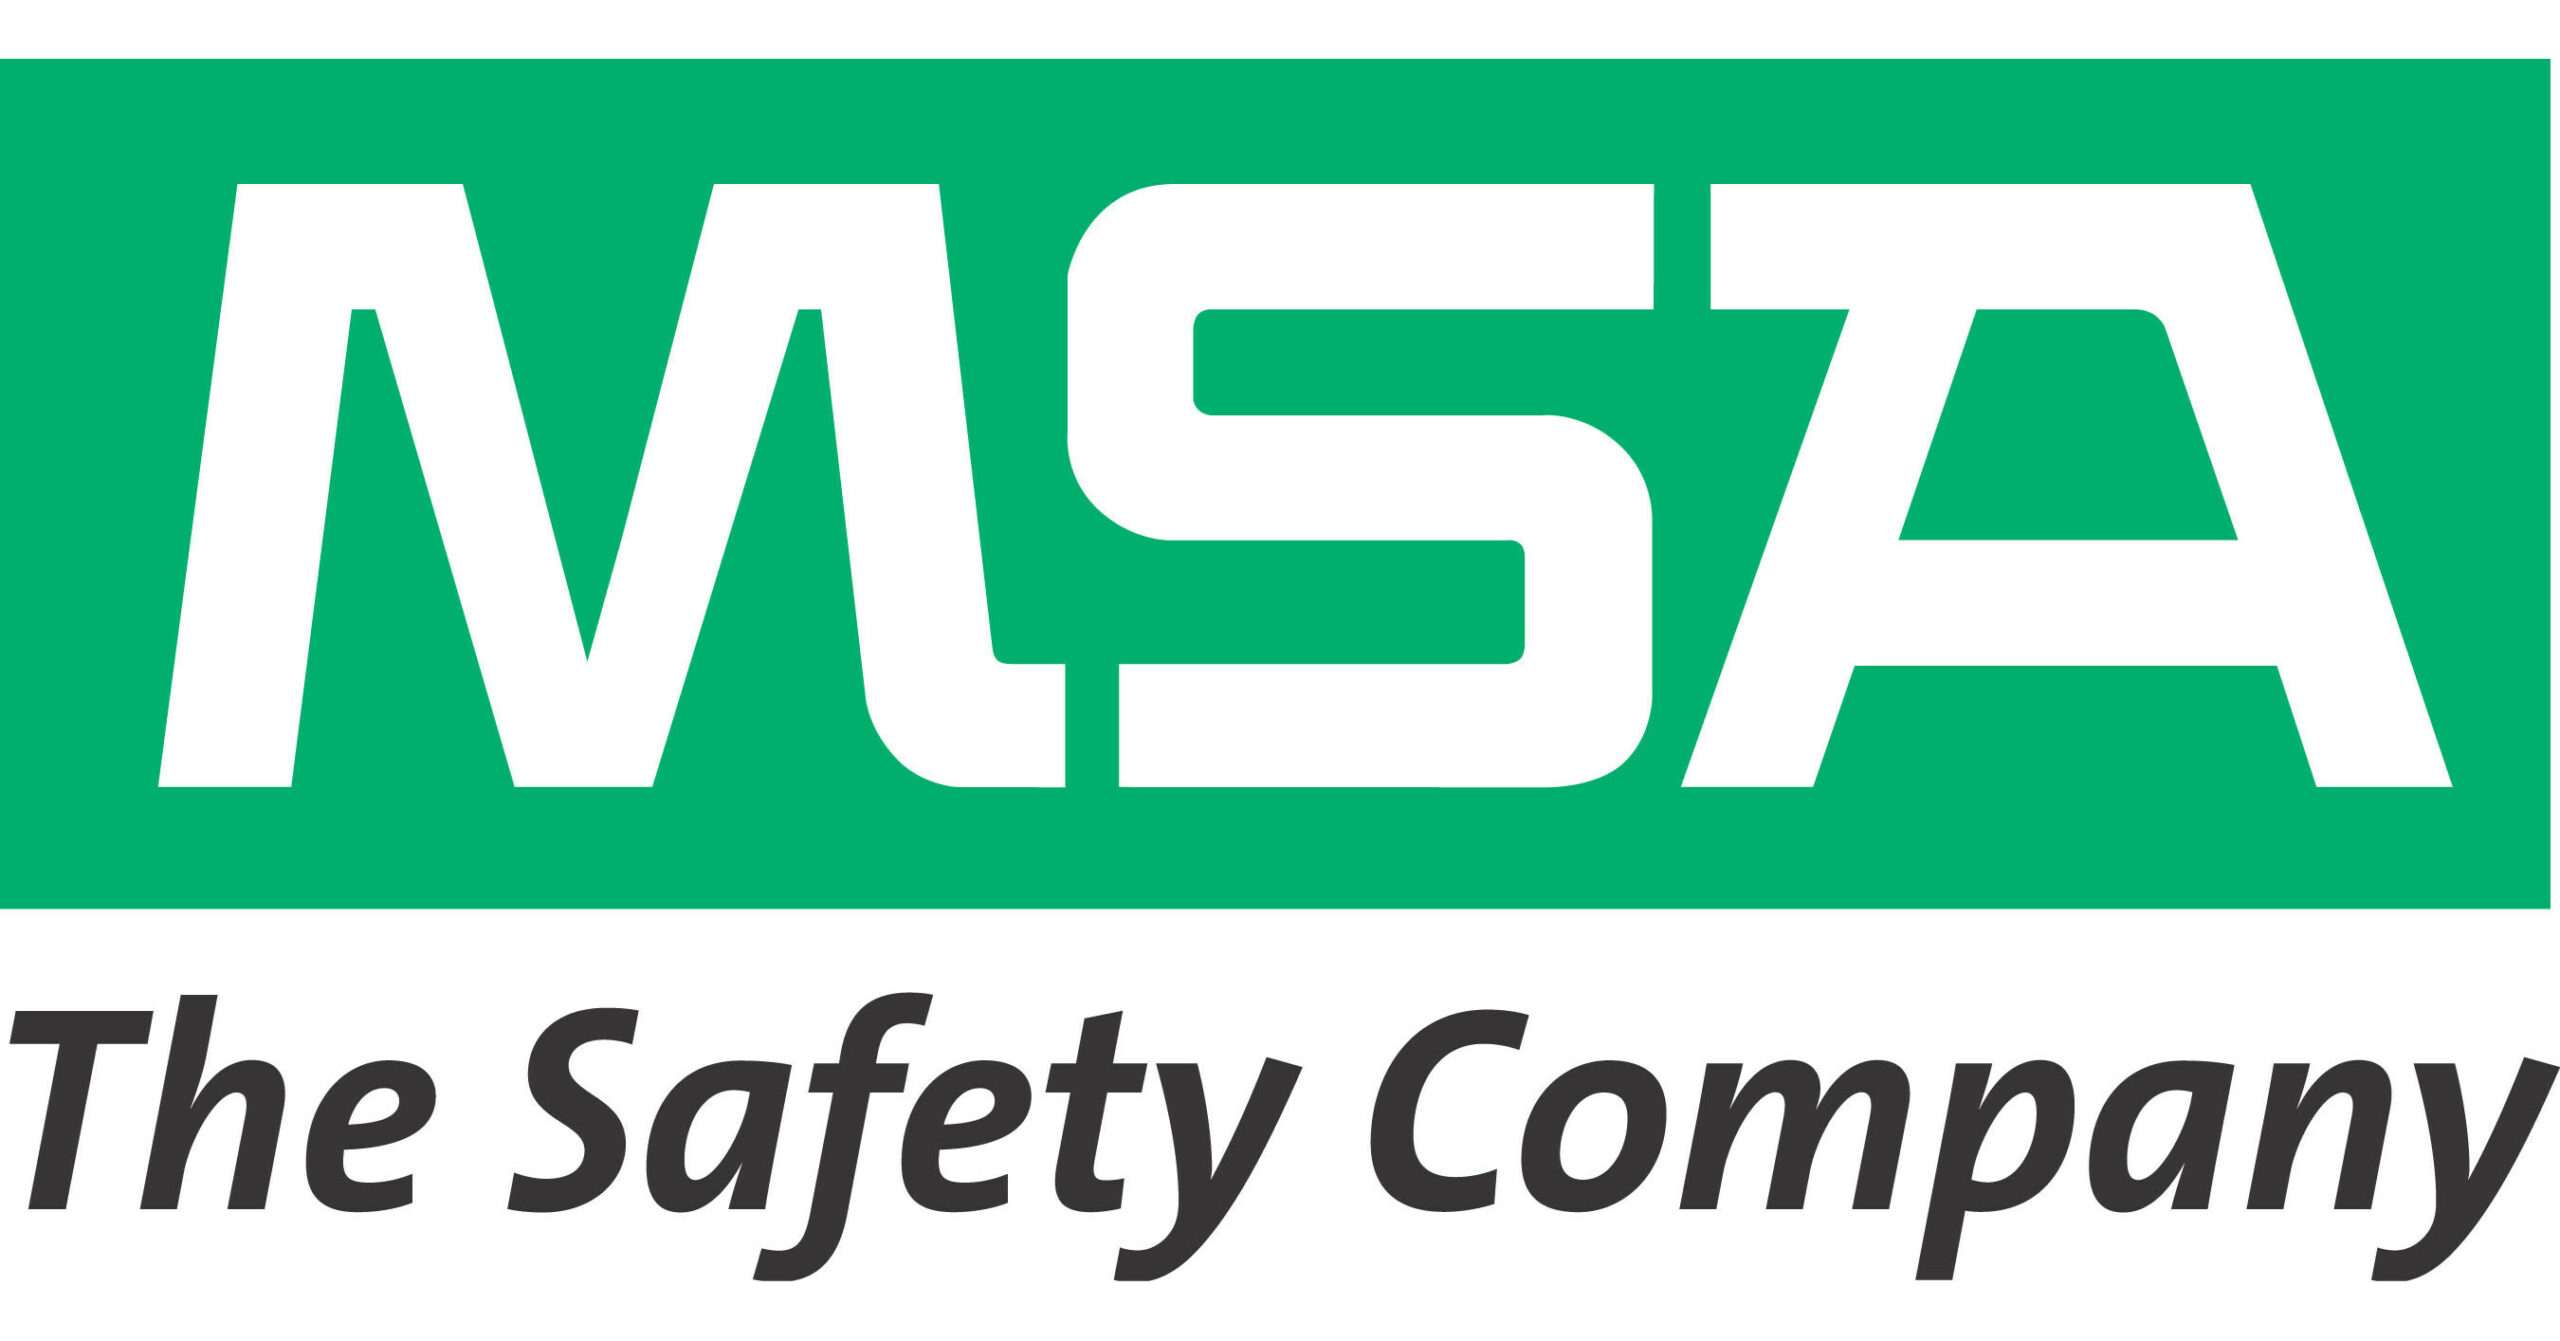 MSA_Logo